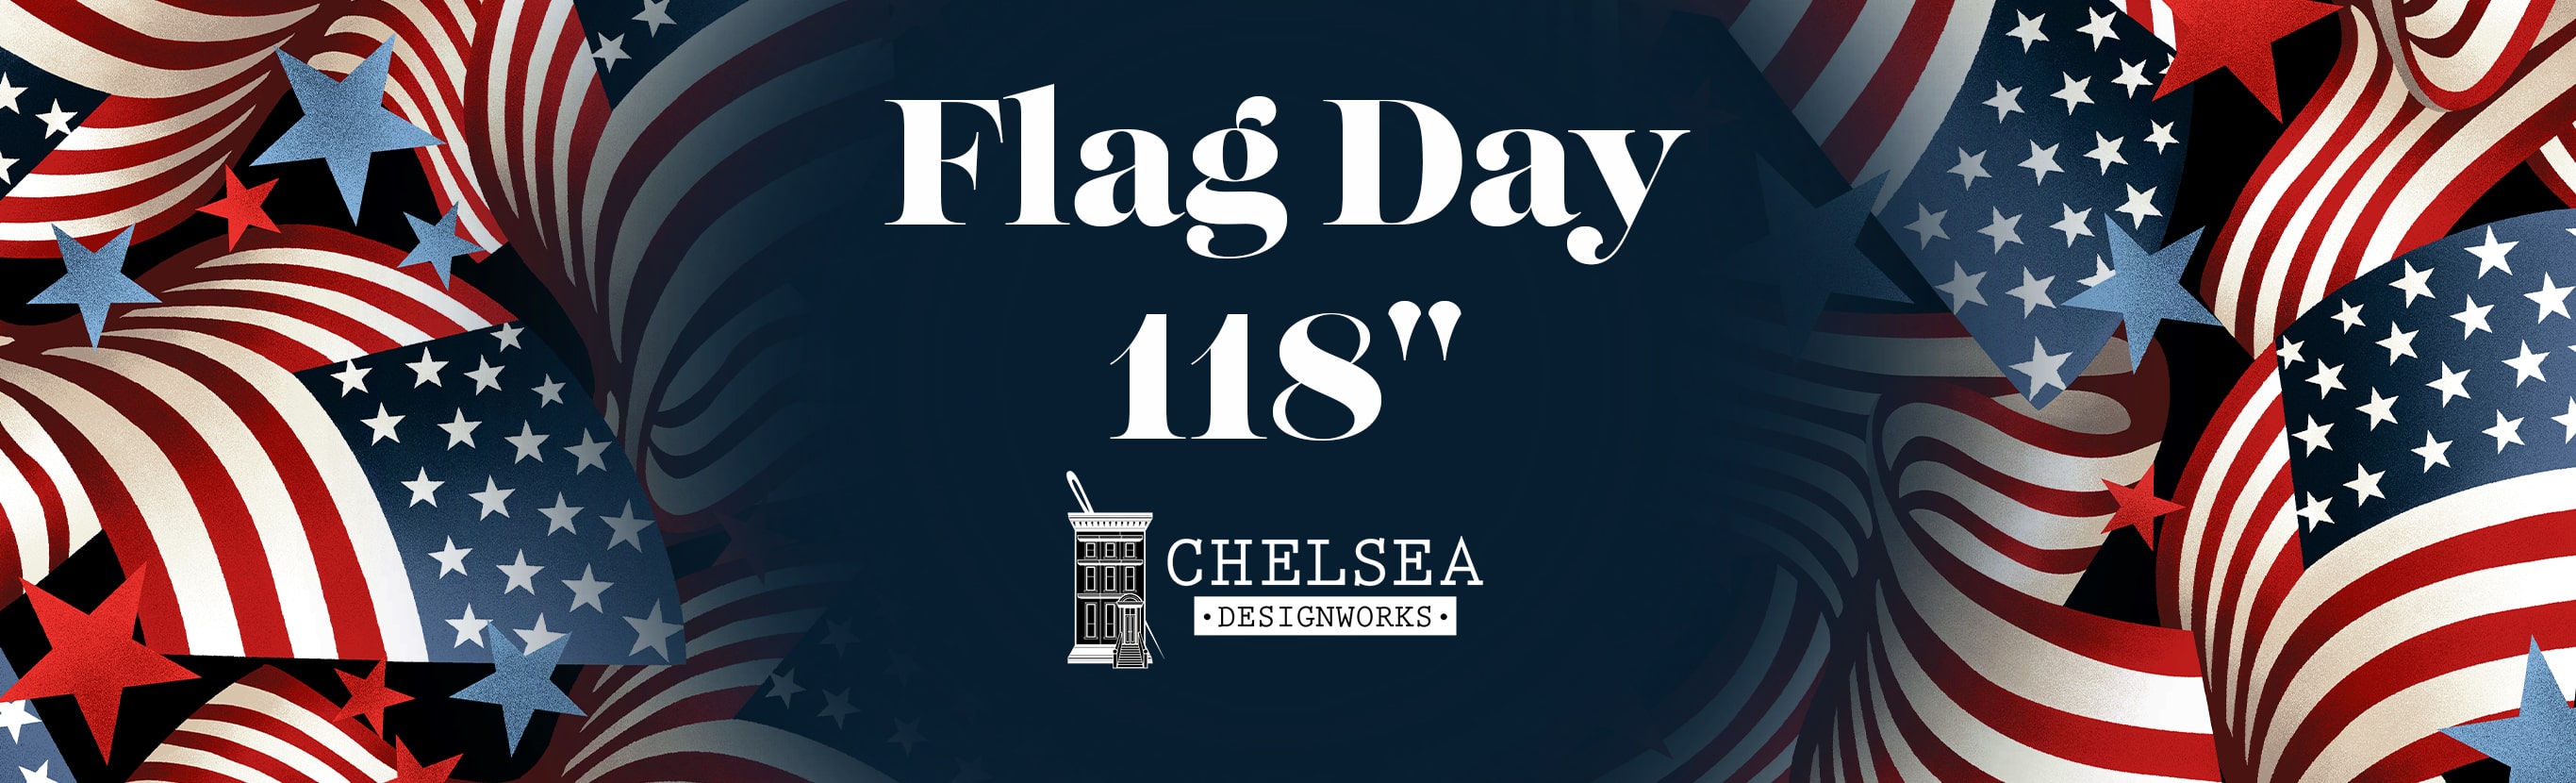 Flag Day 118